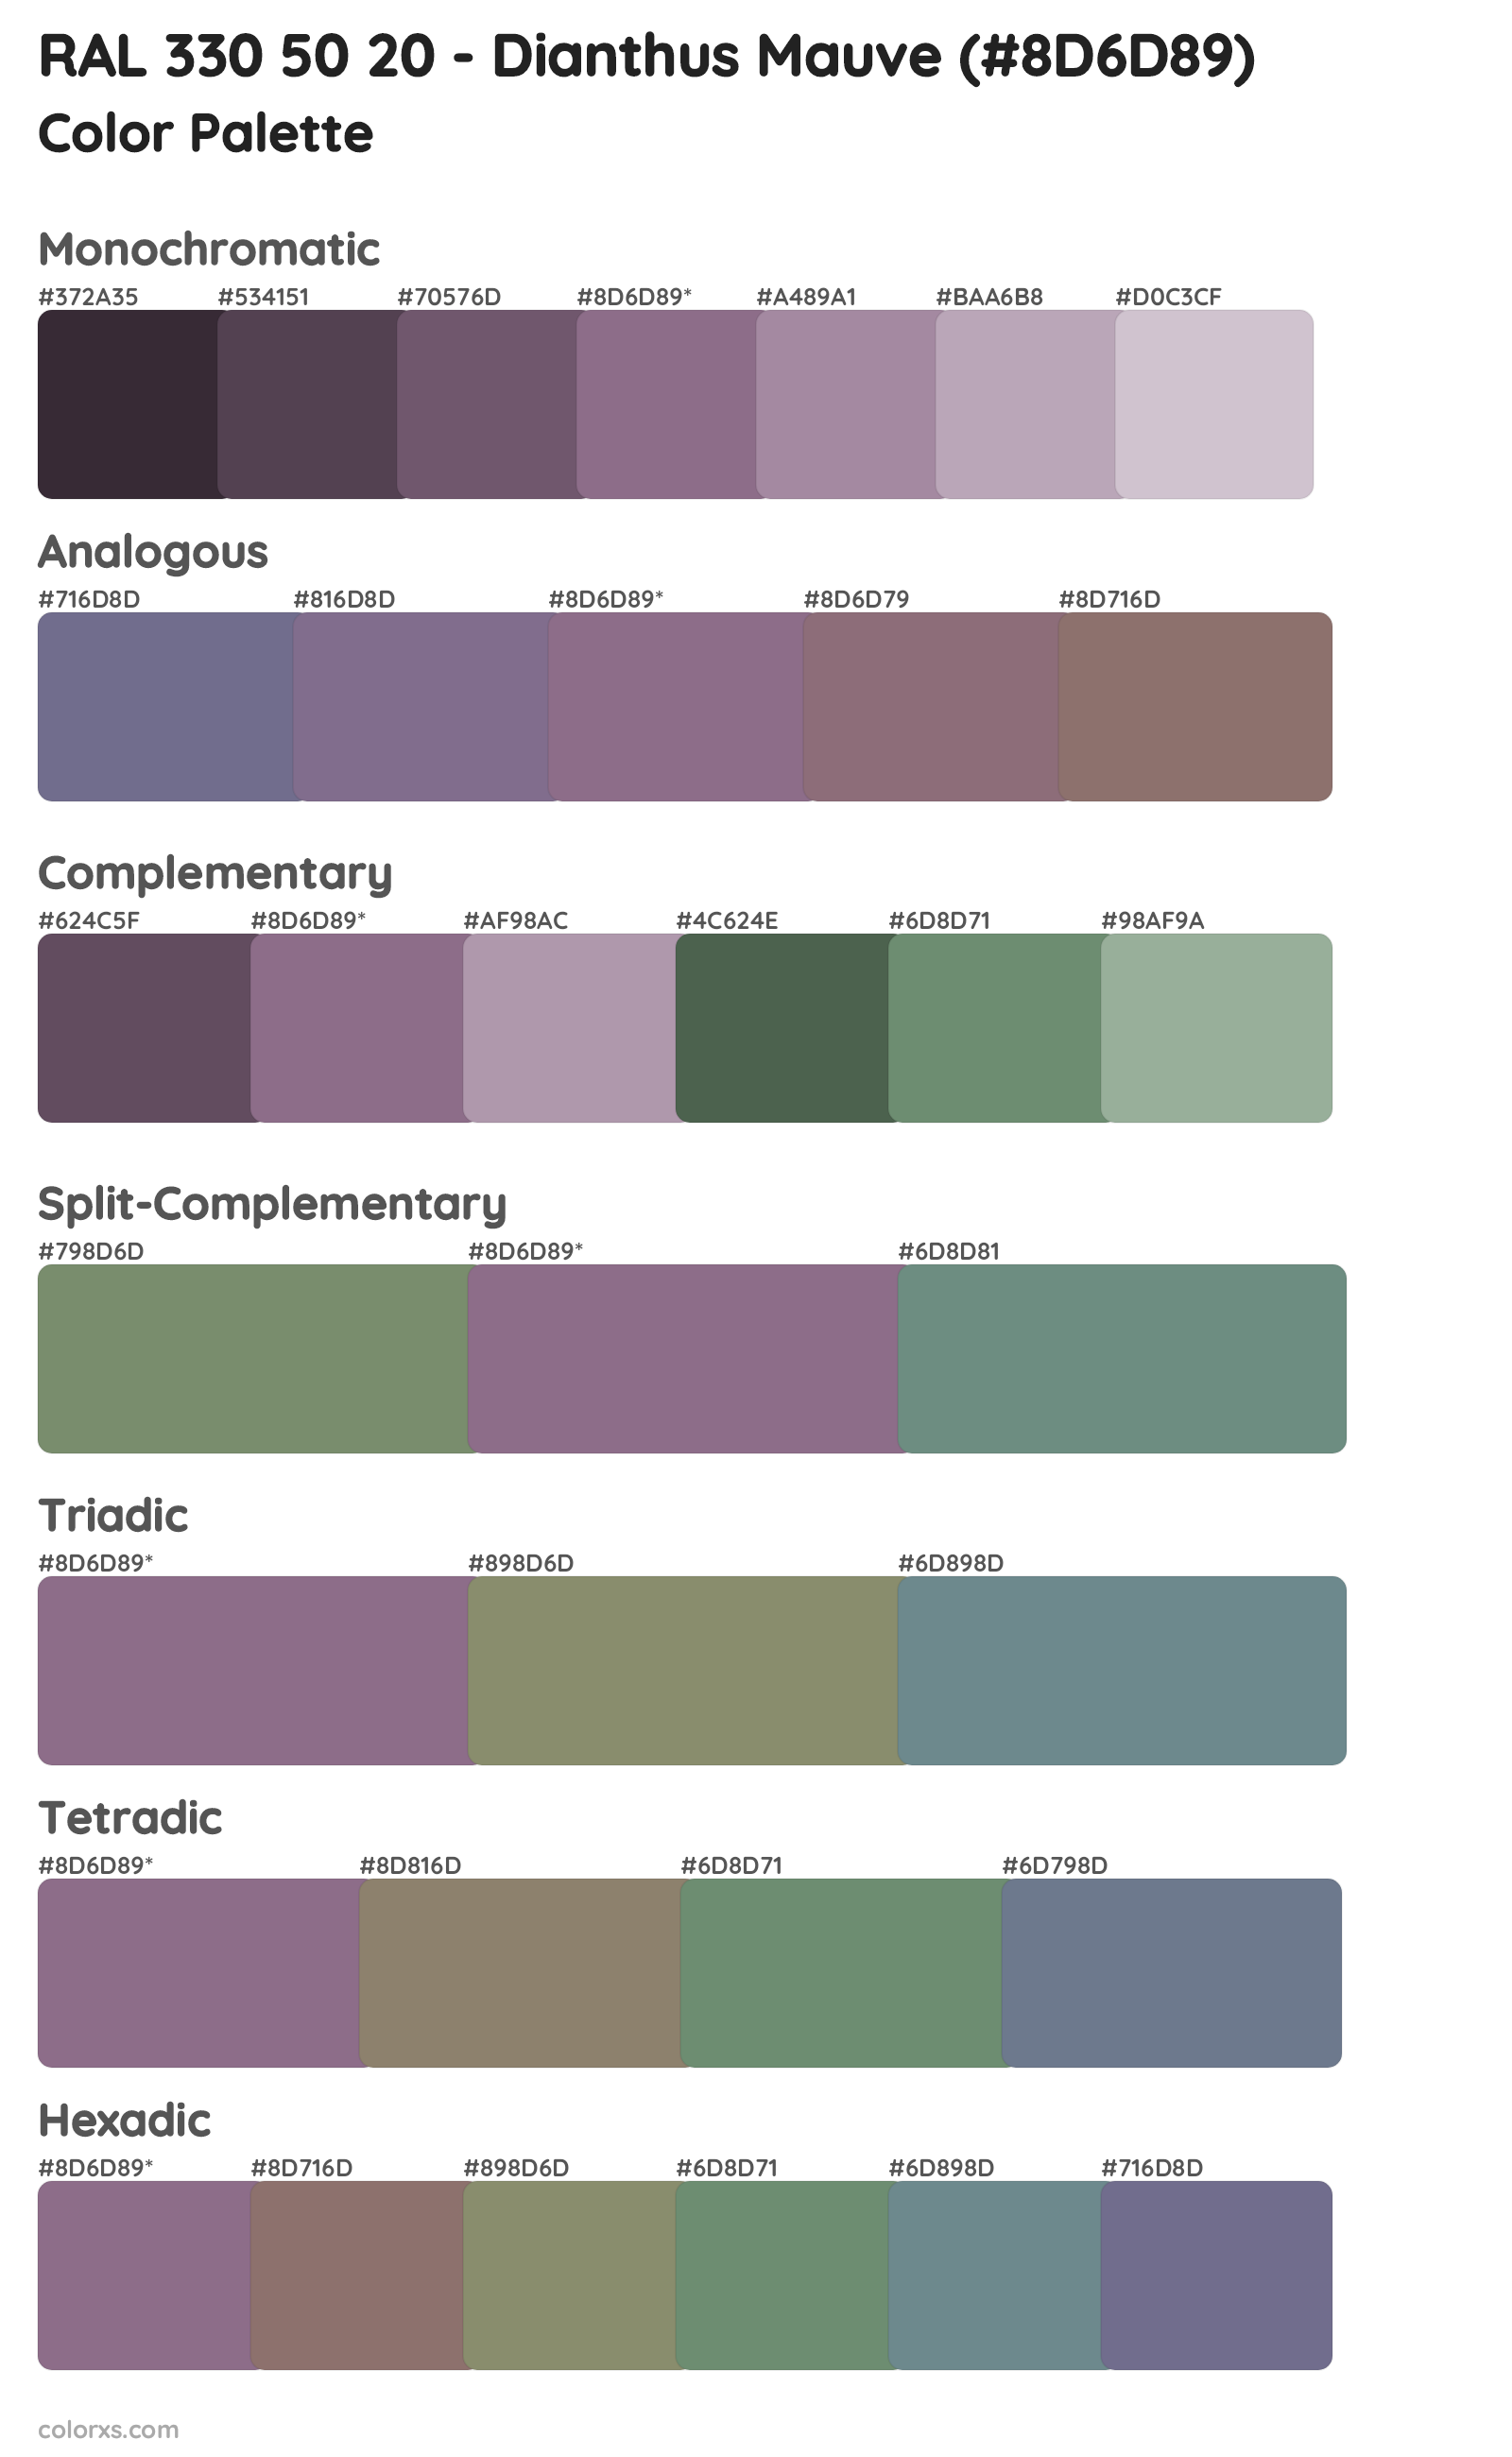 RAL 330 50 20 - Dianthus Mauve Color Scheme Palettes